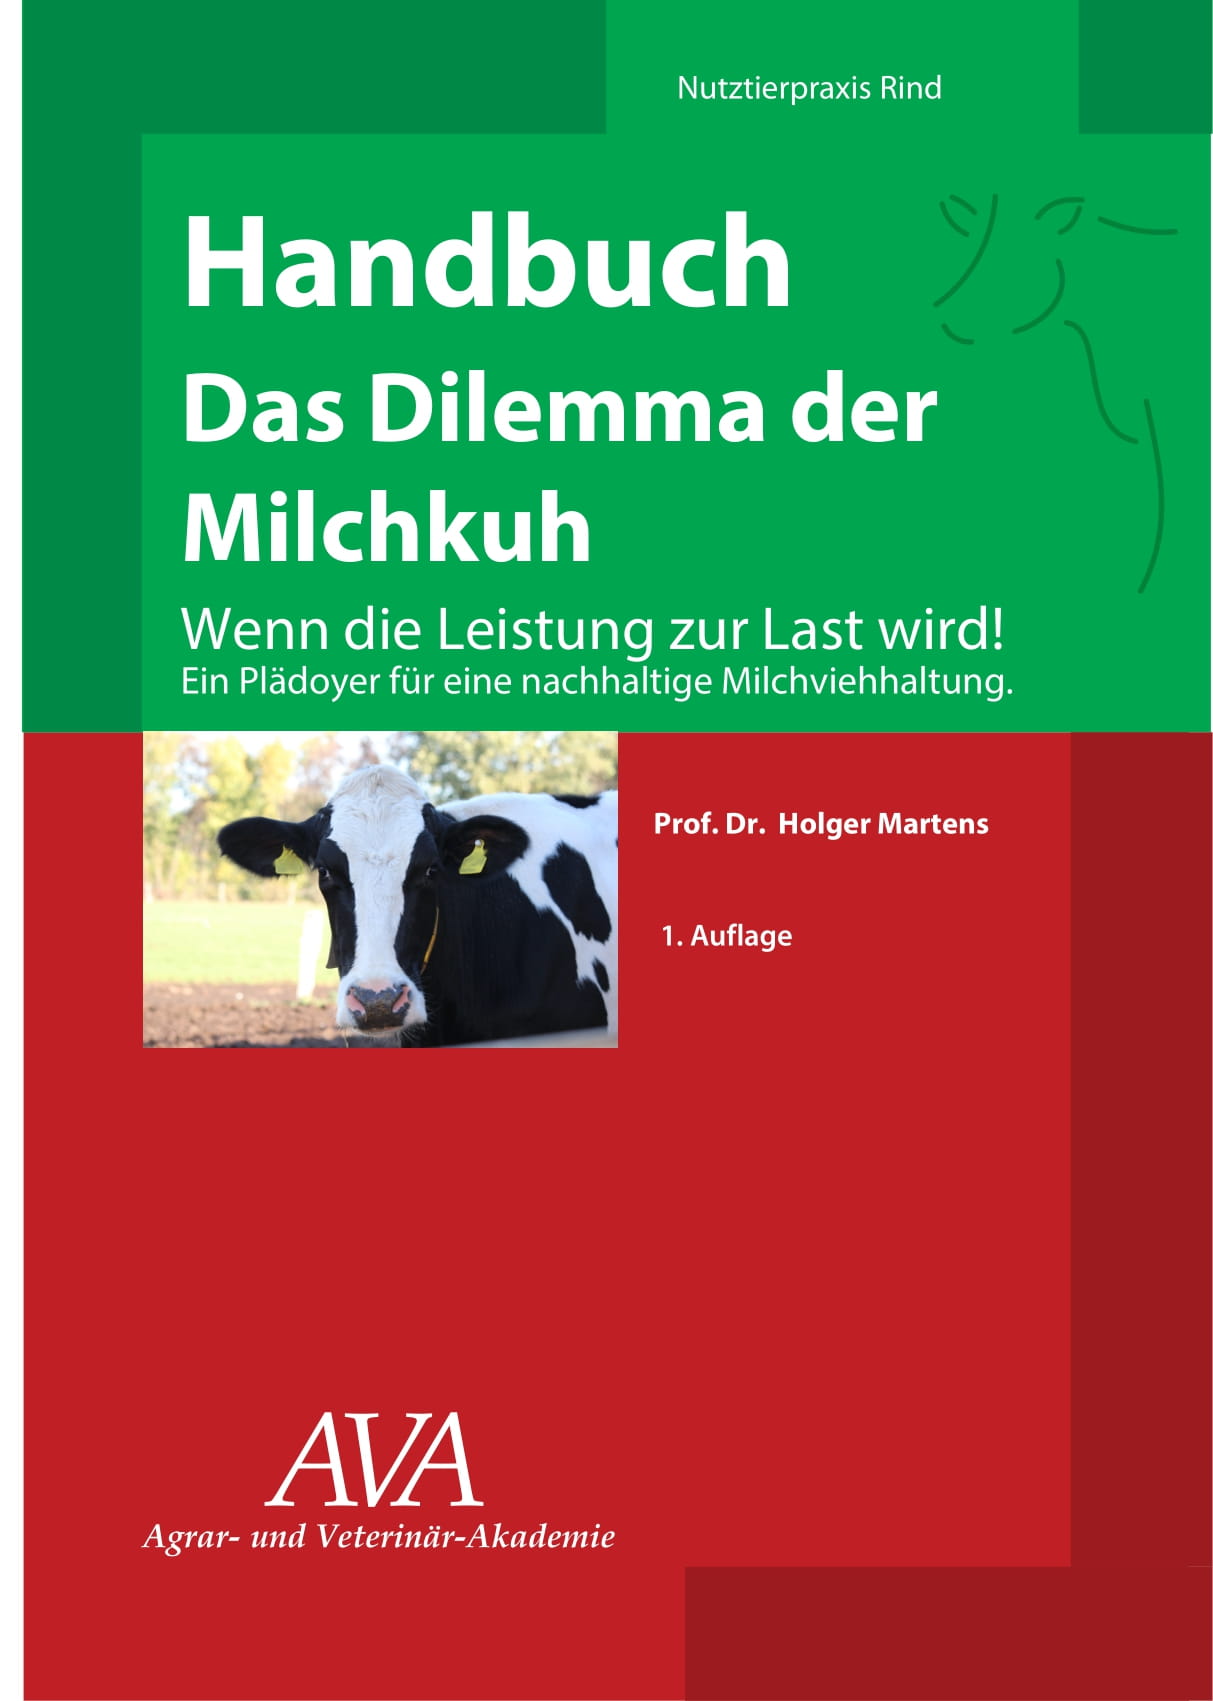 Deutsche-Politik-News.de | das 110-seitige Buch sollte jeder Tierarzt, Landwirt, Berater und Fach-Studierende lesen